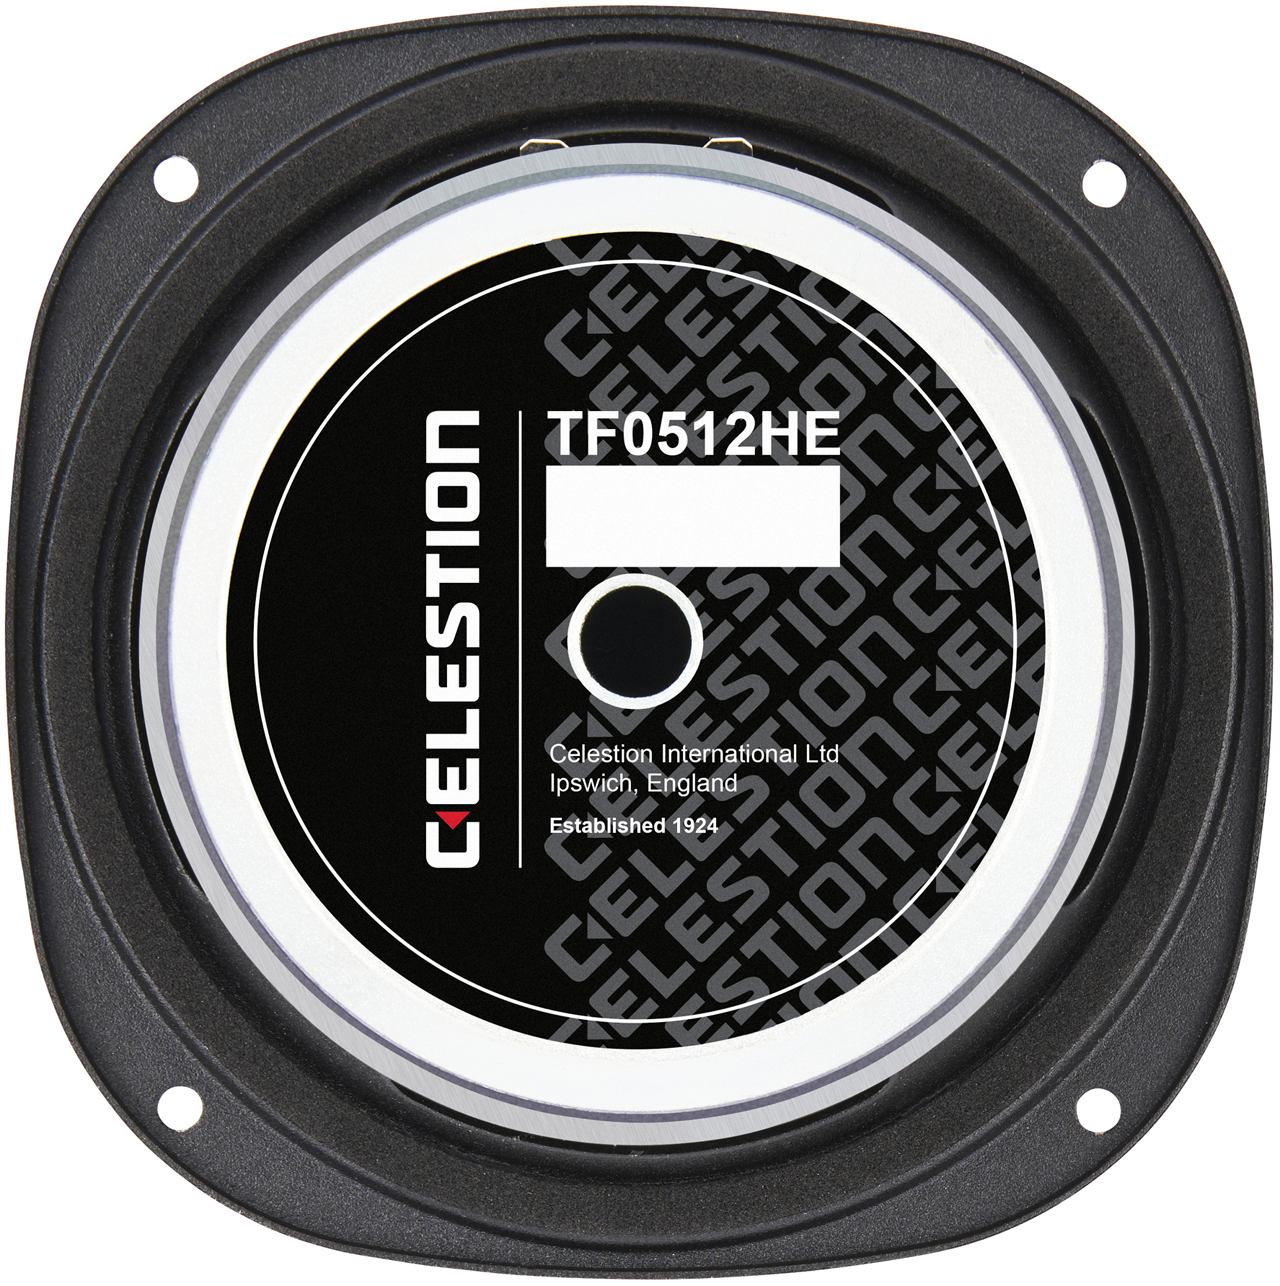 Celestion TF0512HE Mid Bass